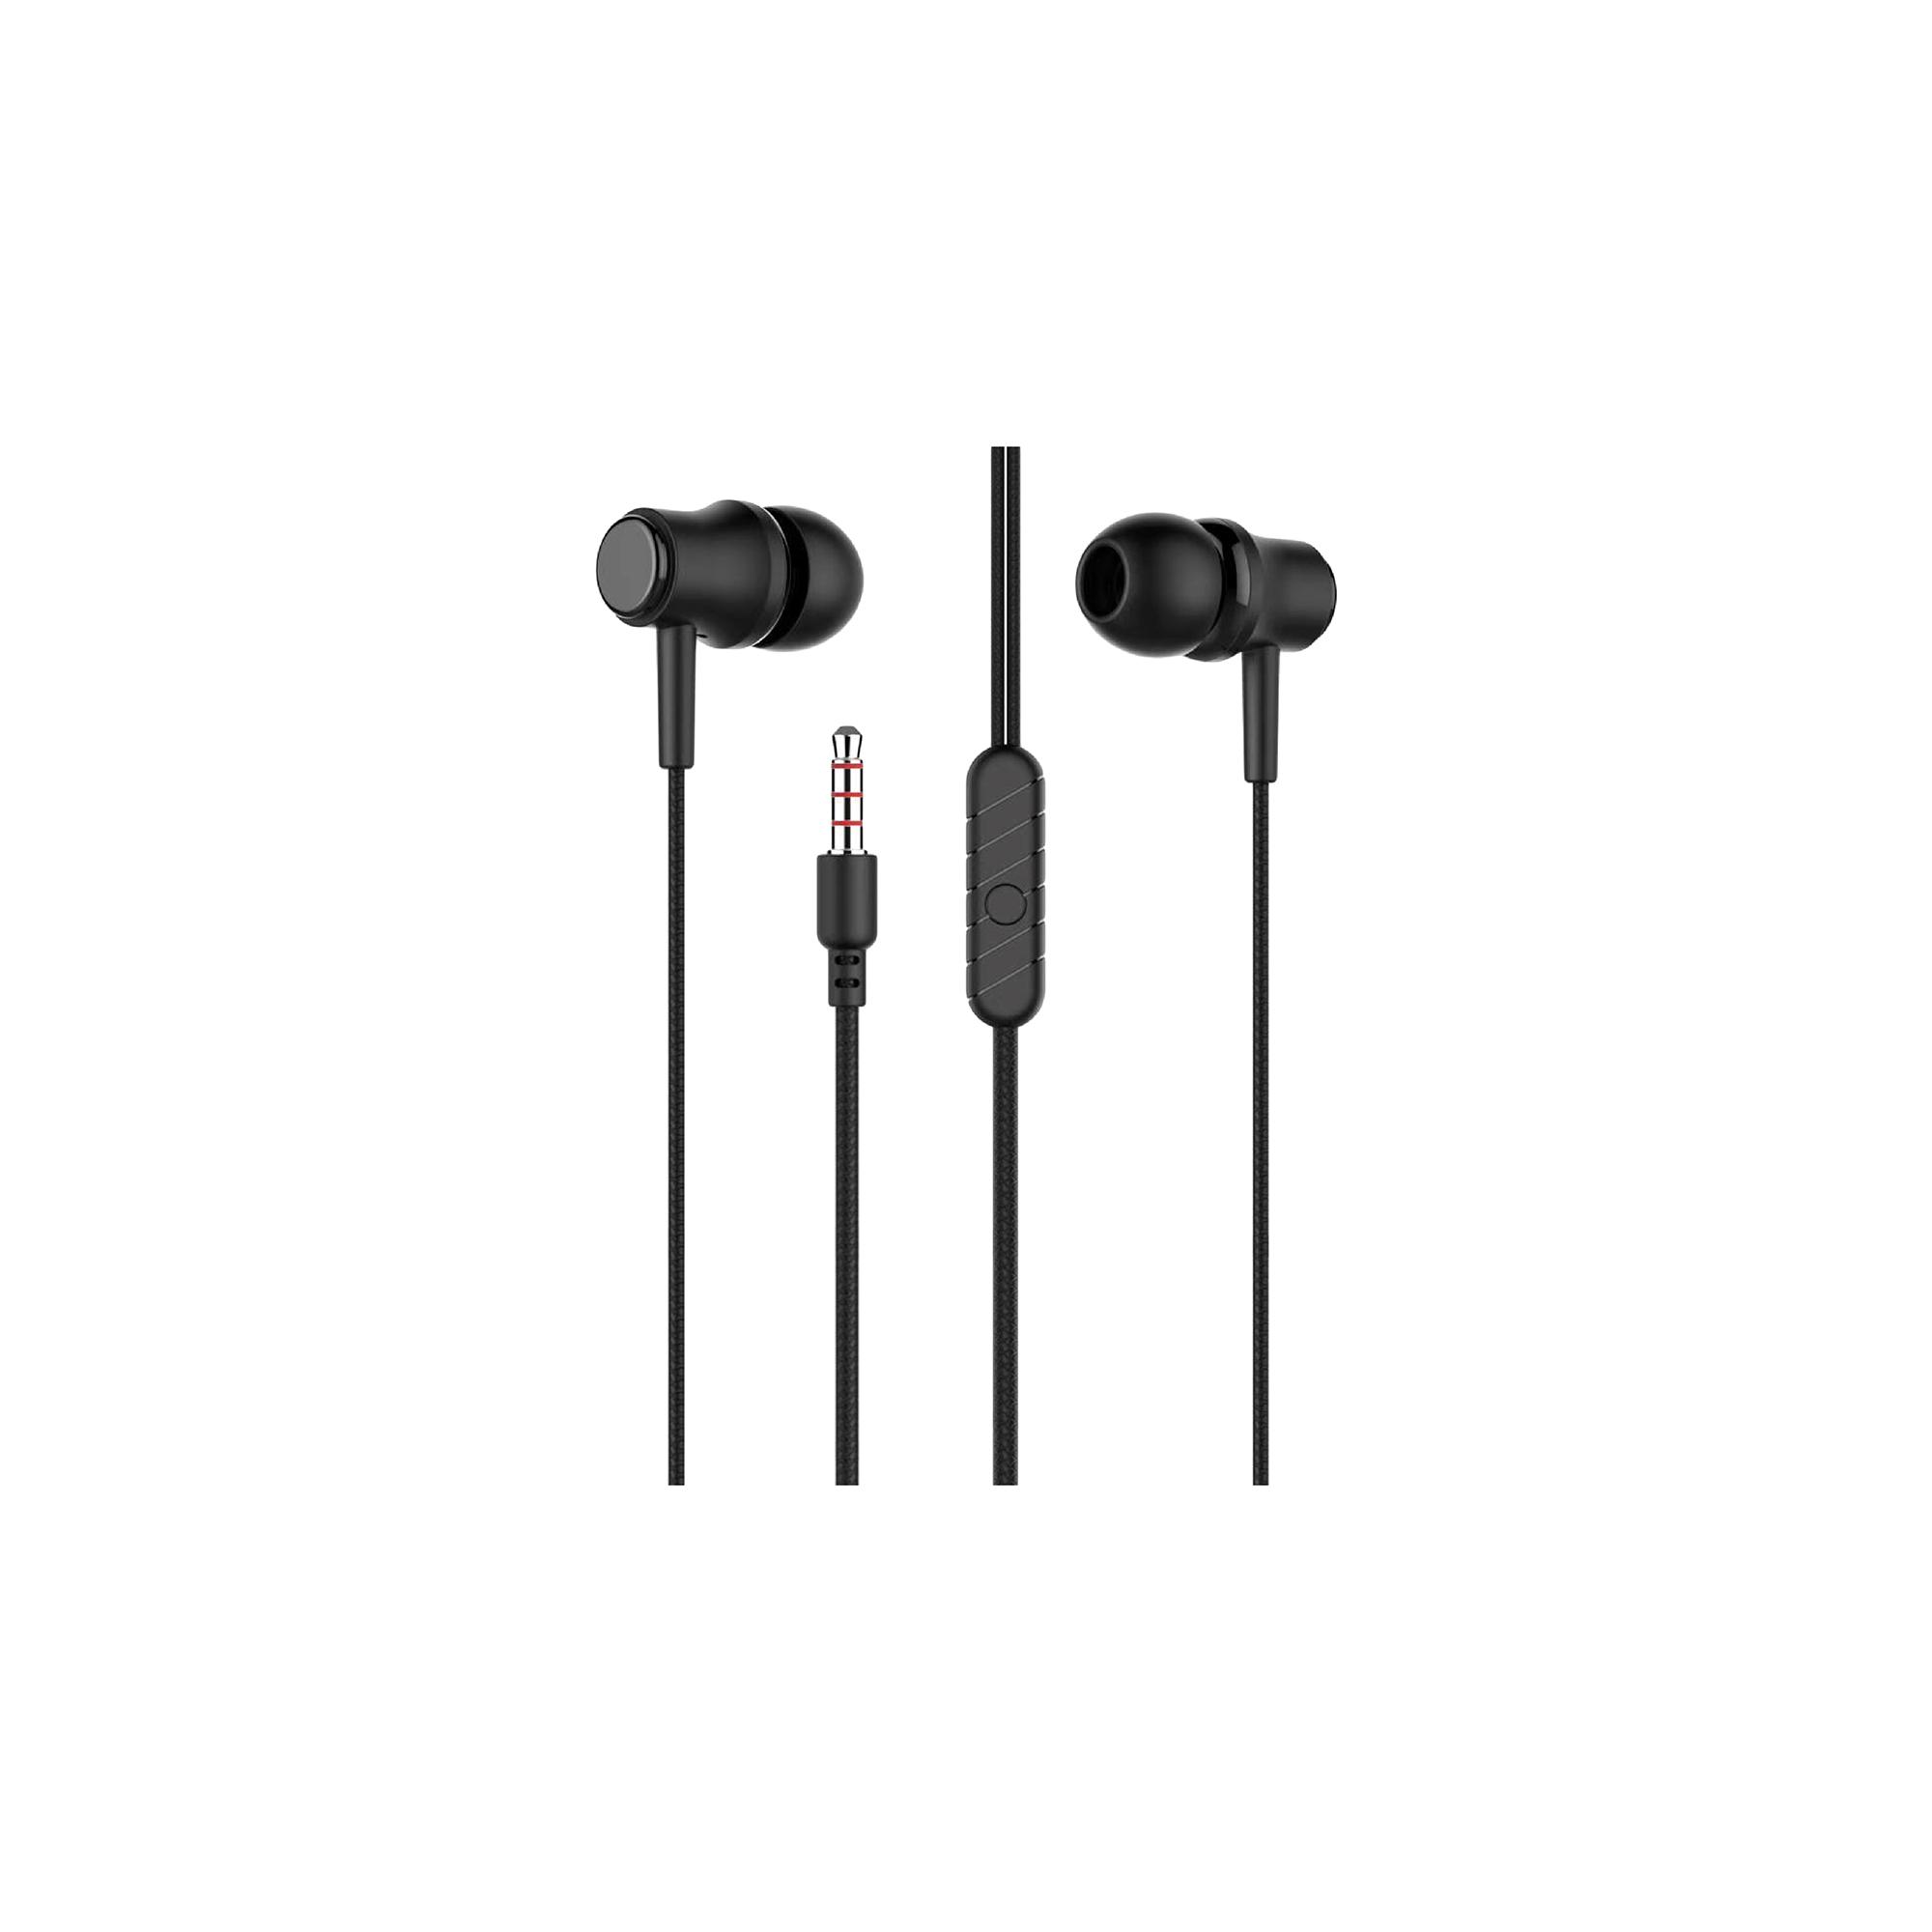 Sunix SX-06 in-ear headphones